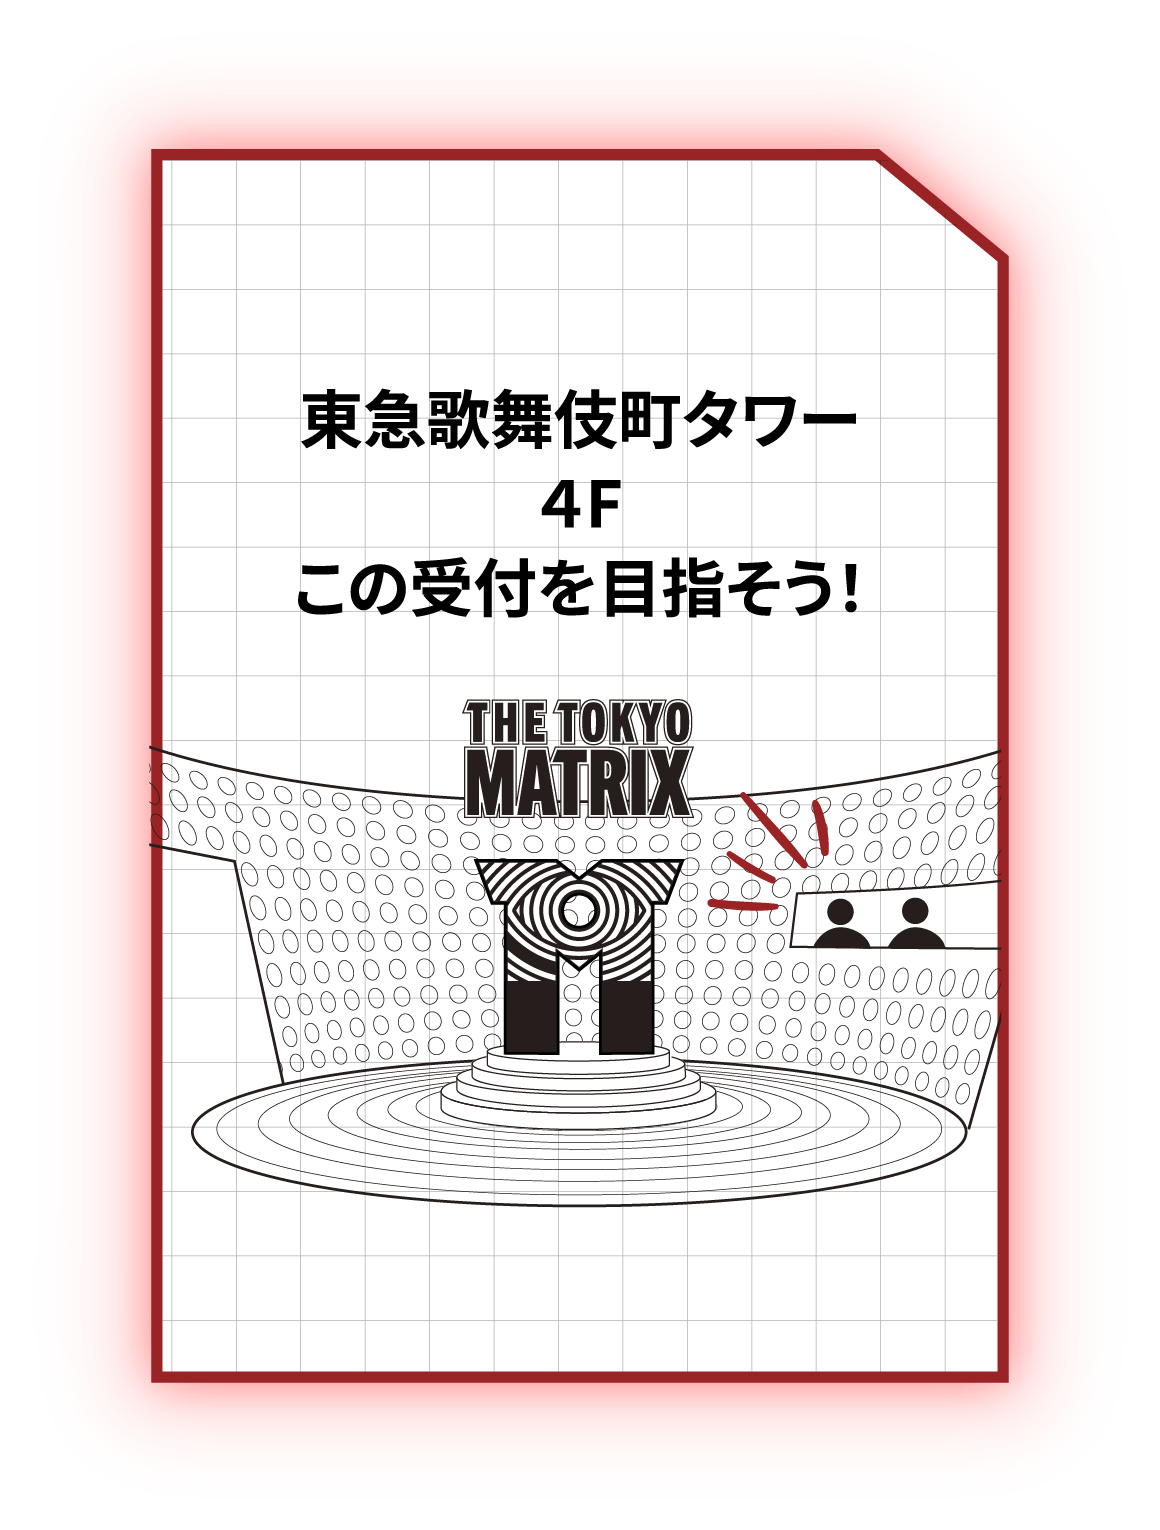 予約をした日時に会場へ。 東急歌舞伎町タワー４Fこの受付を目指そう！